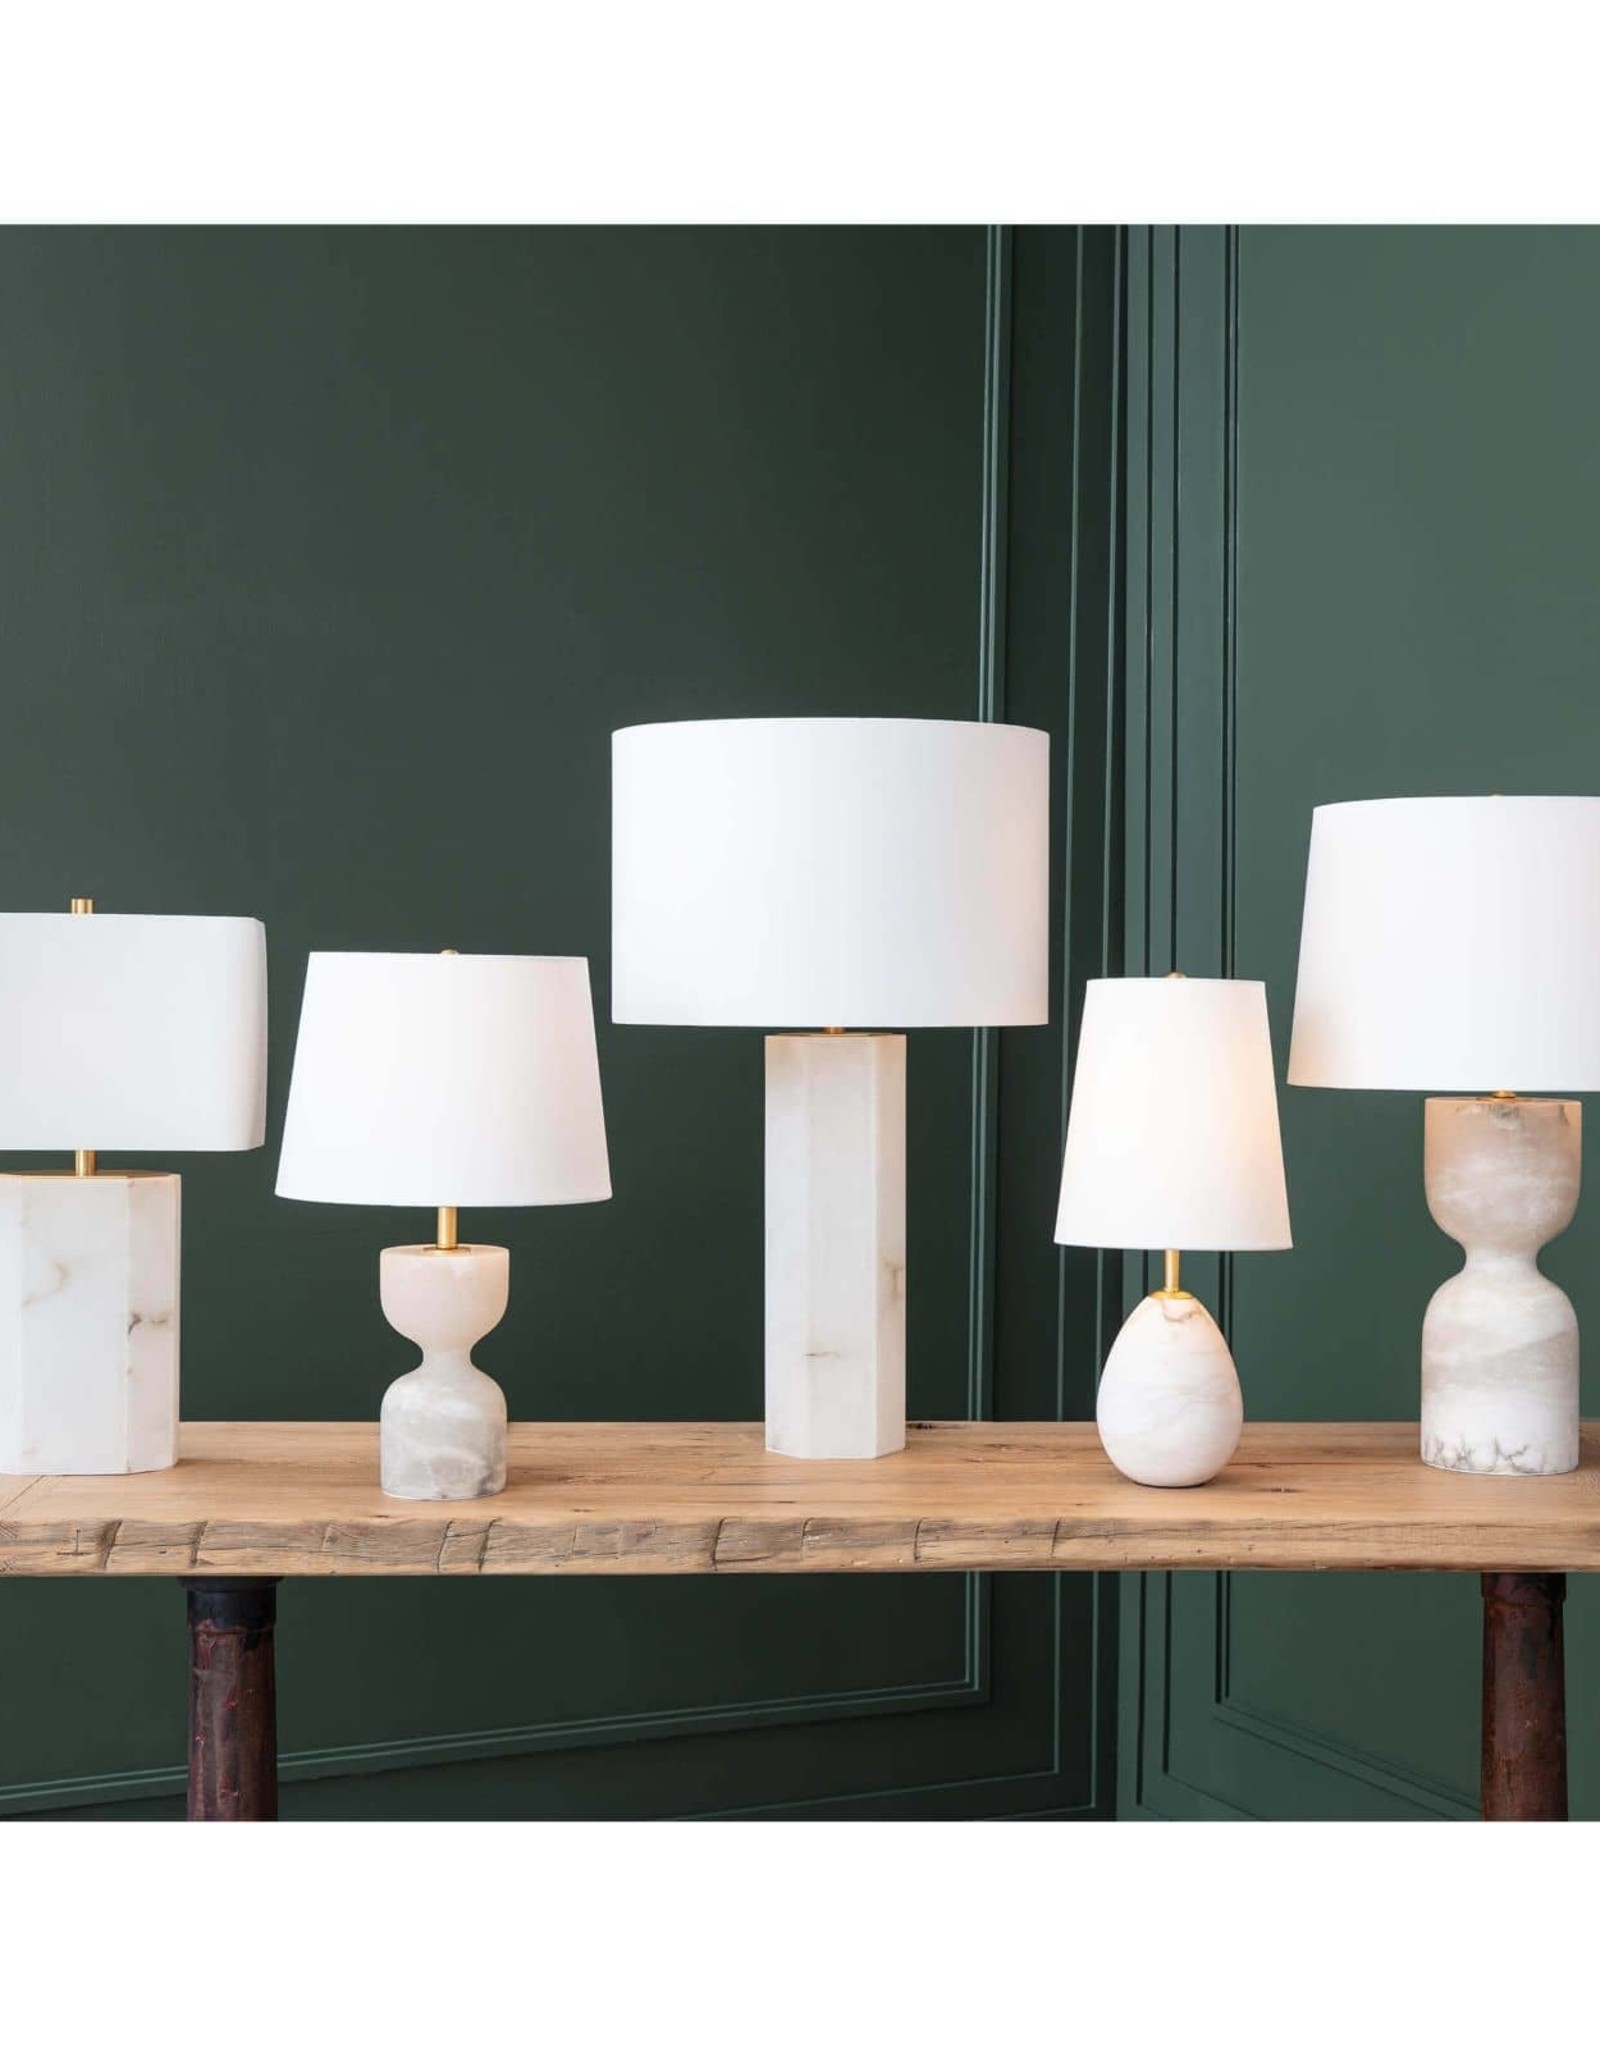 Regina Andrew Design Stella Alabaster Table Lamp